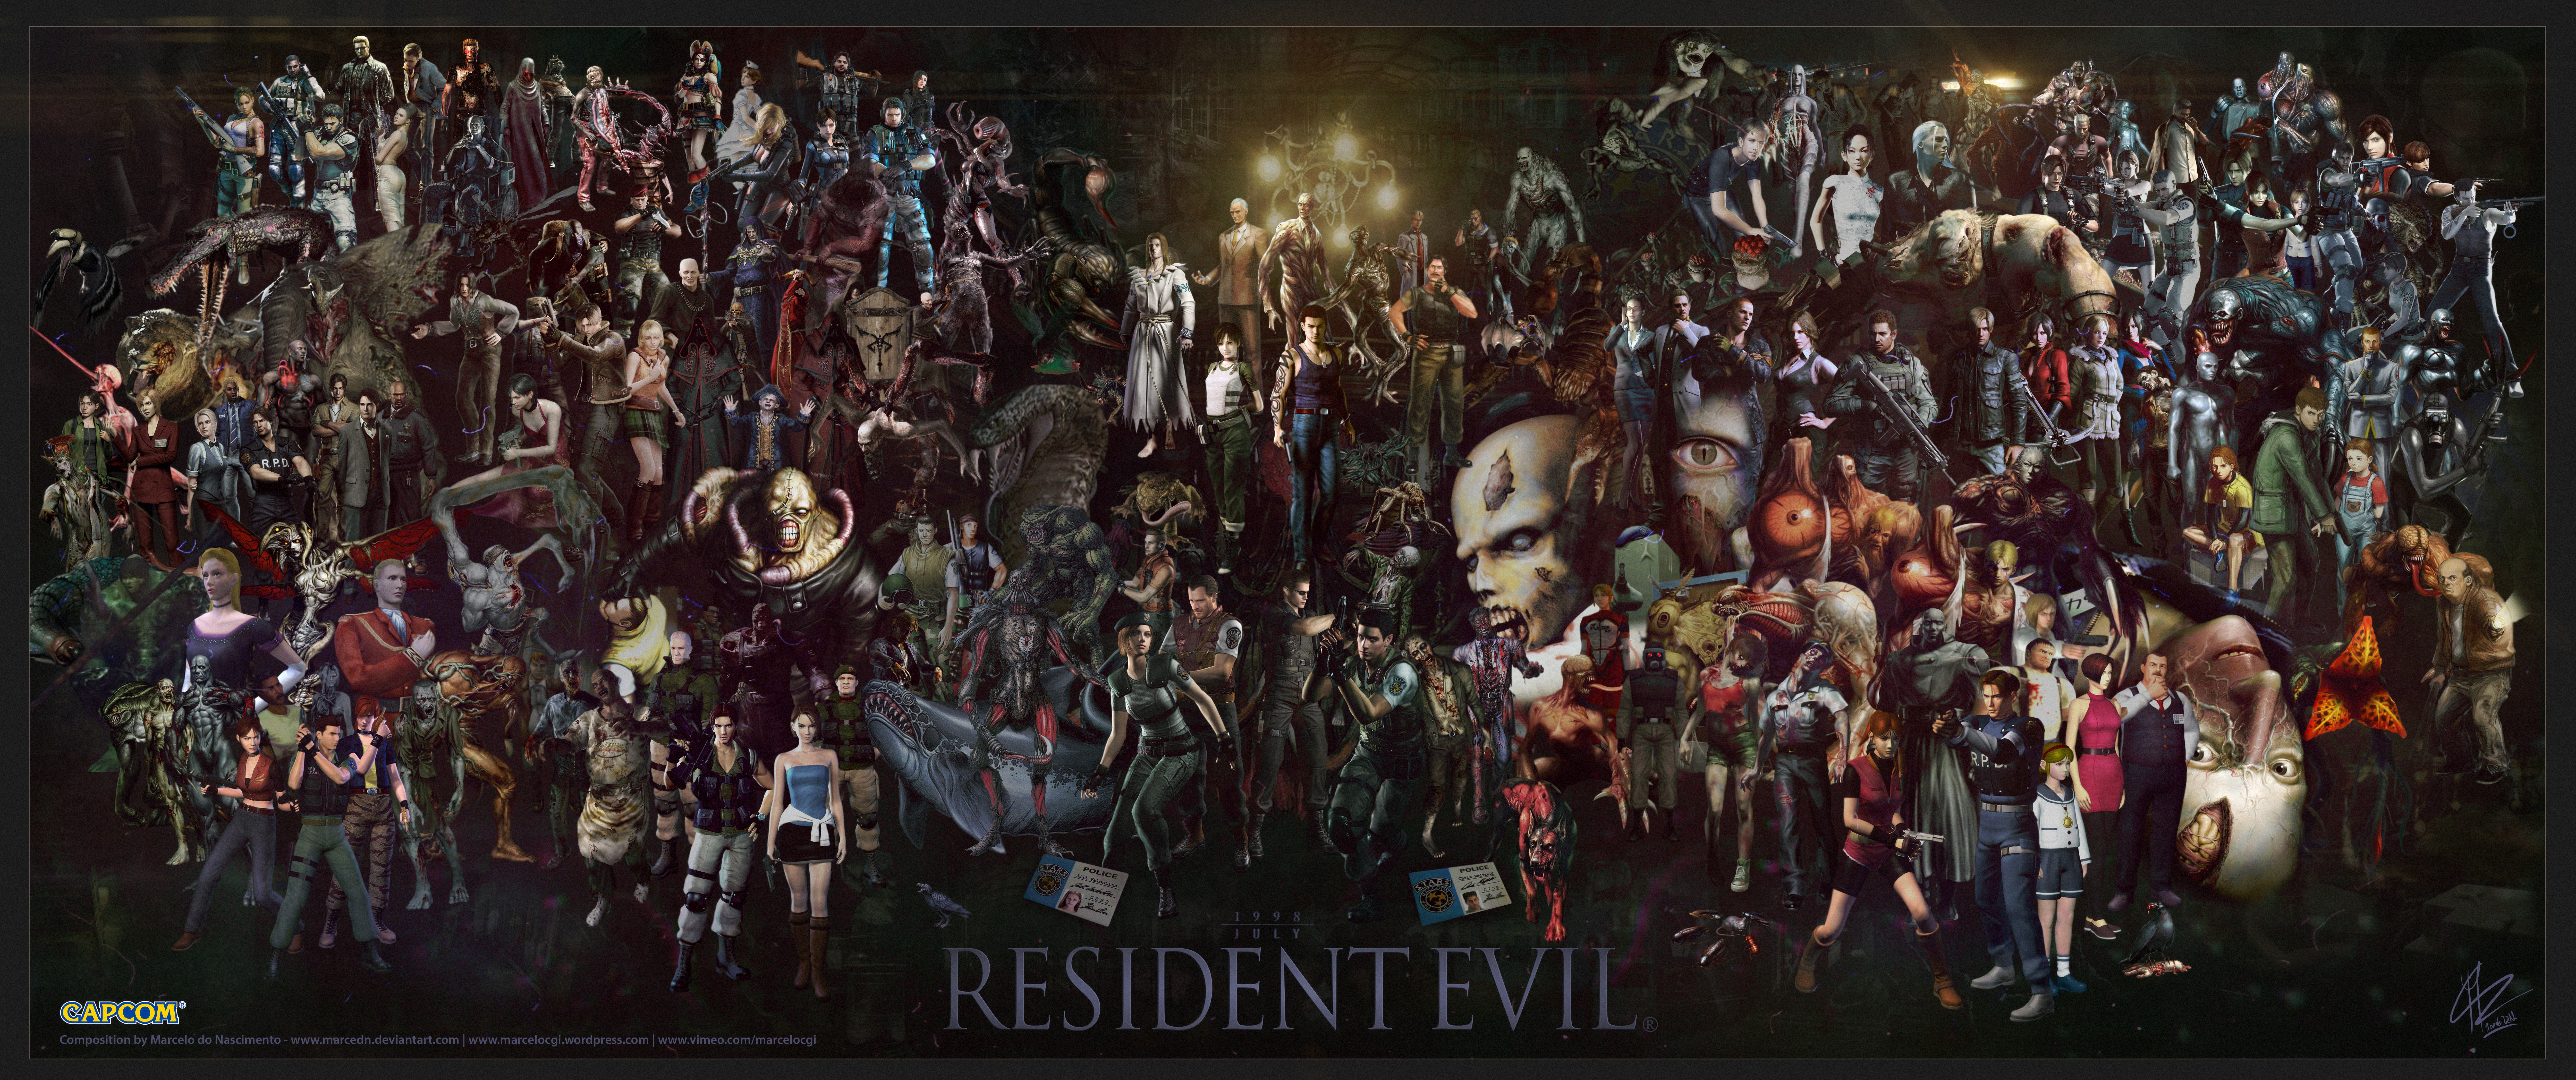 Resident Evil #10